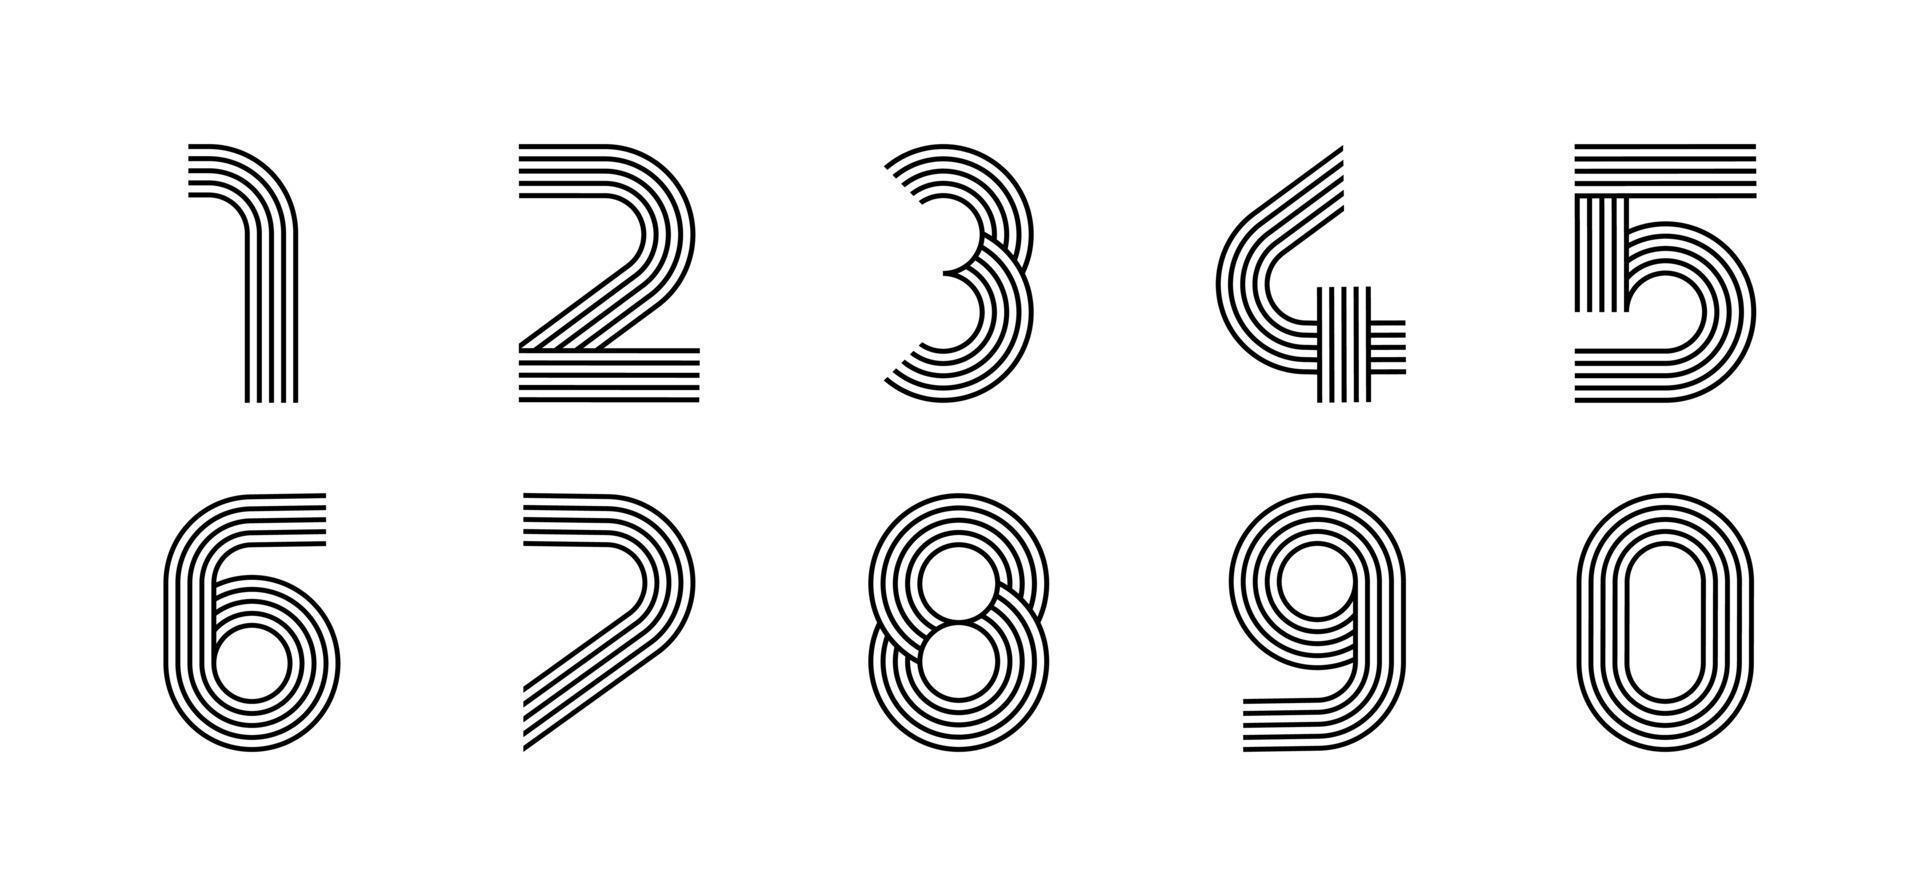 logotipo moderno lineal de dígitos. todos los números en forma de tira de línea. carácter numérico del alfabeto y diseño abstracto lineal numérico. logo, identidad corporativa, app, poster creativo y más. vector